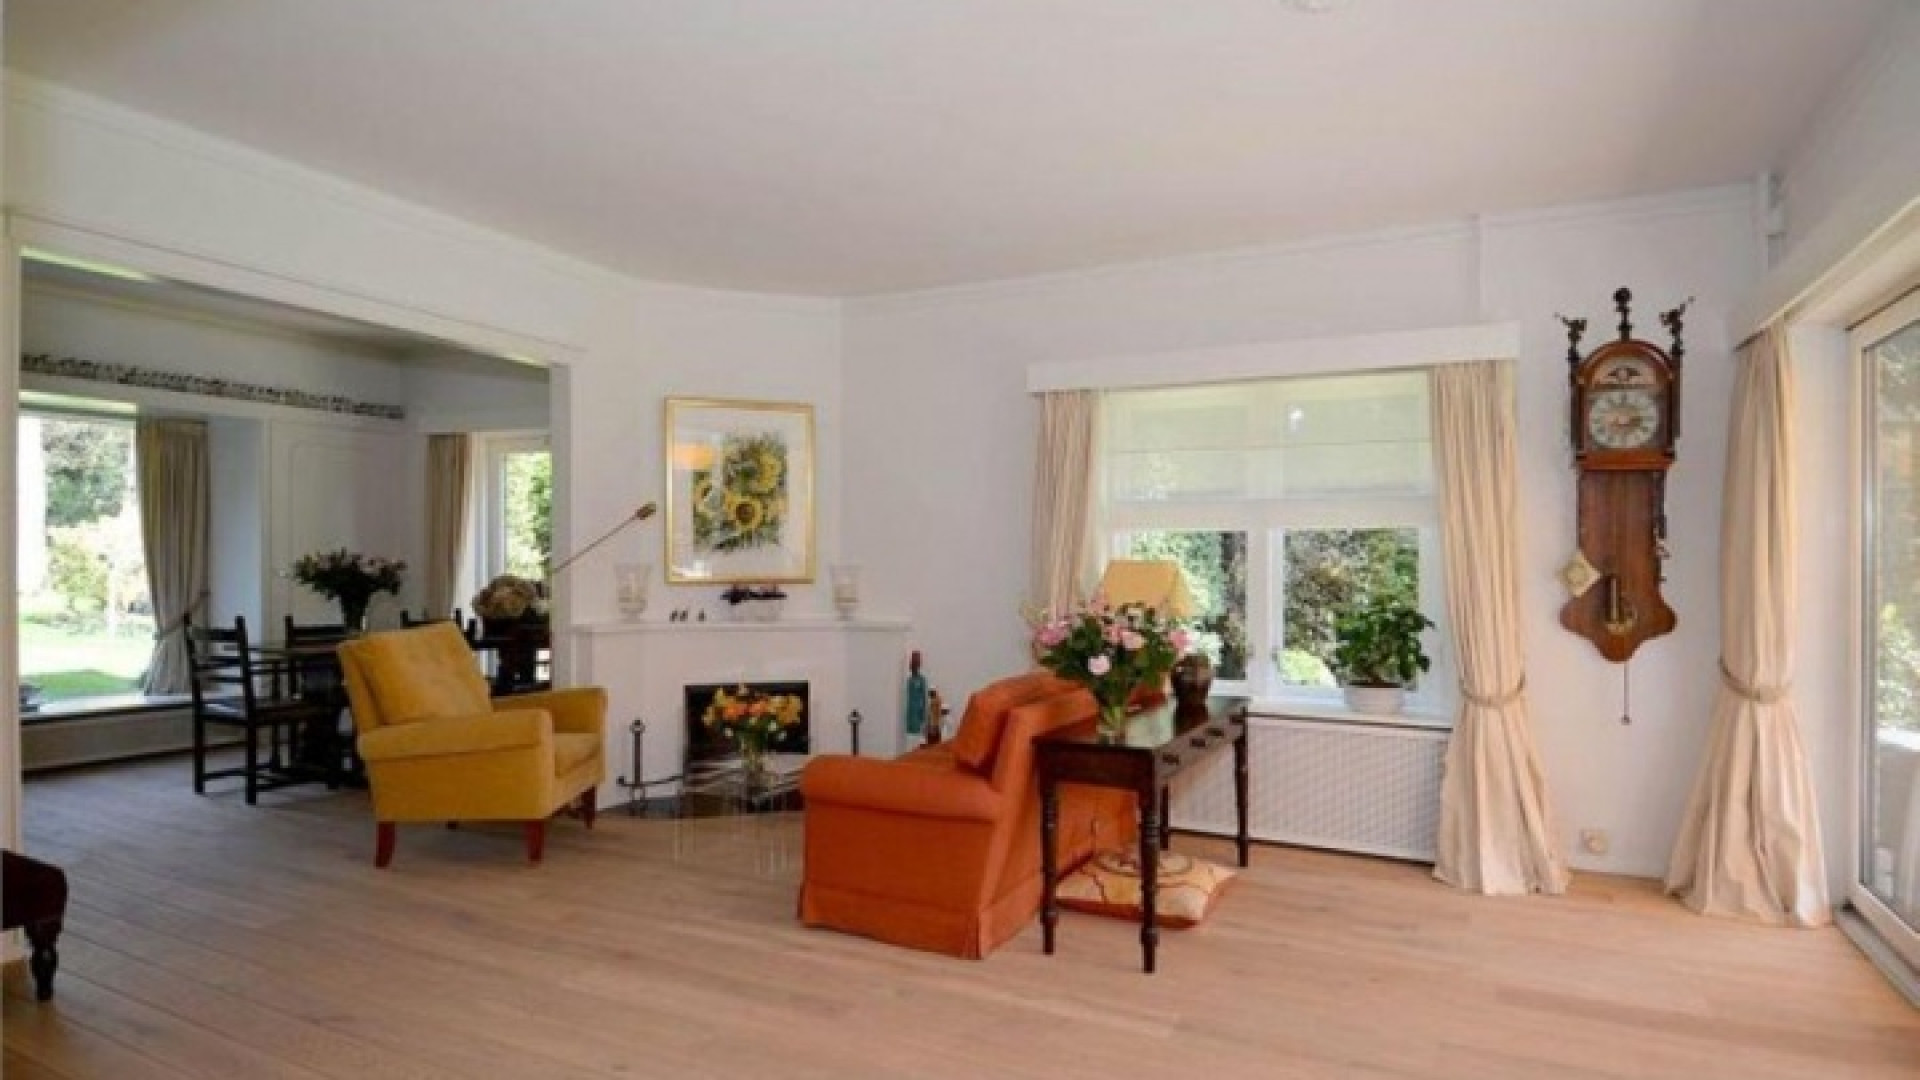 TV kok Rudolf van Veen koopt luxe villa in het Gooi. Zie foto's